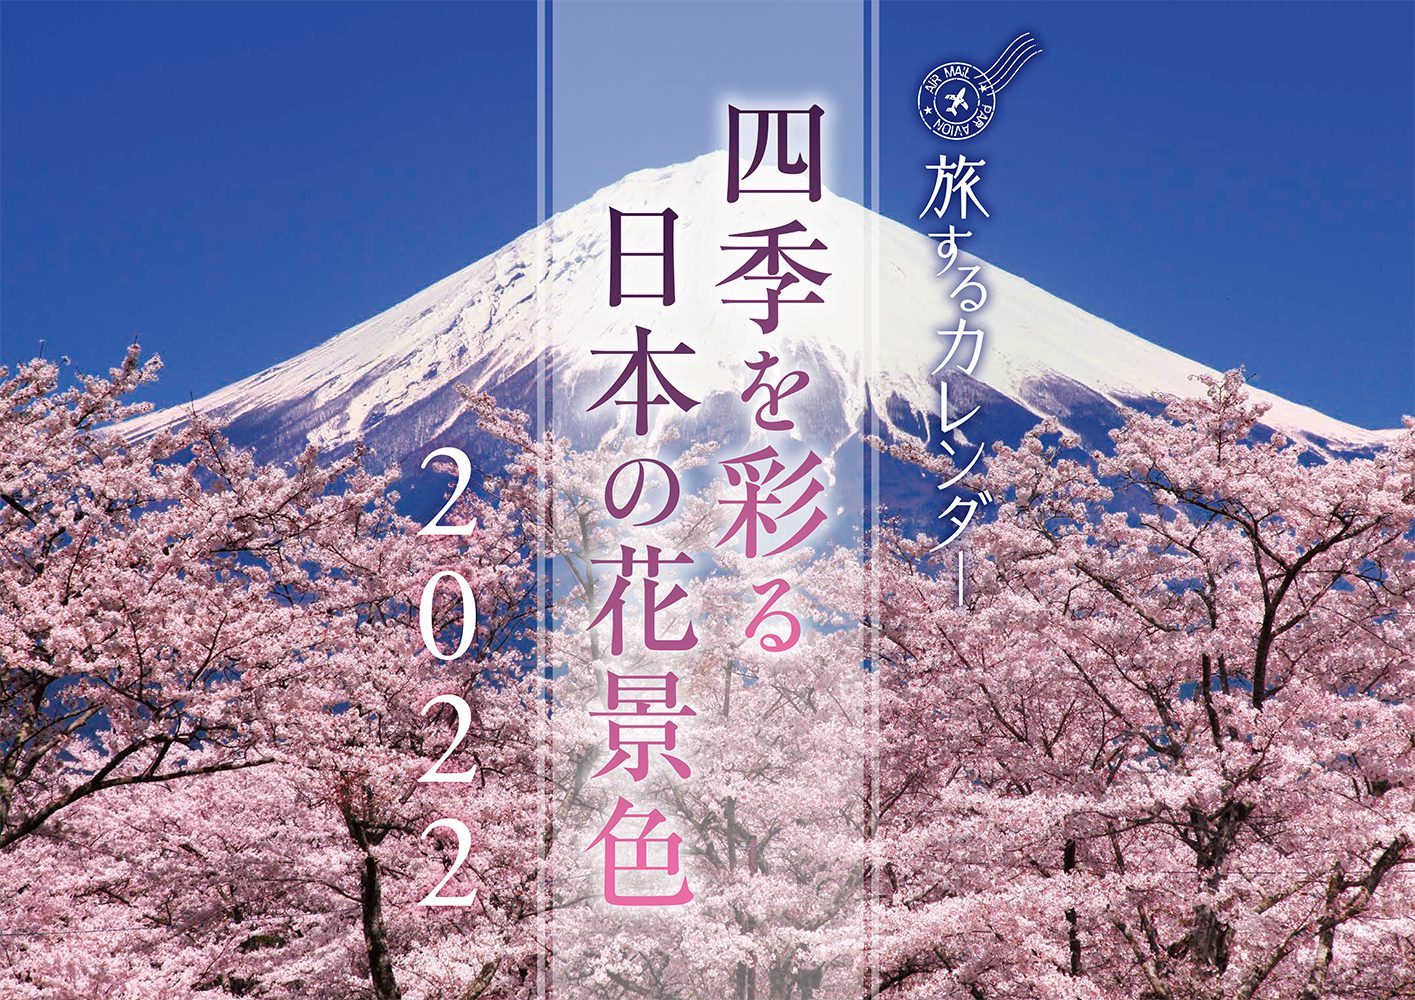 四季を彩る日本の花景色カレンダー22 芸文社カタログサイト